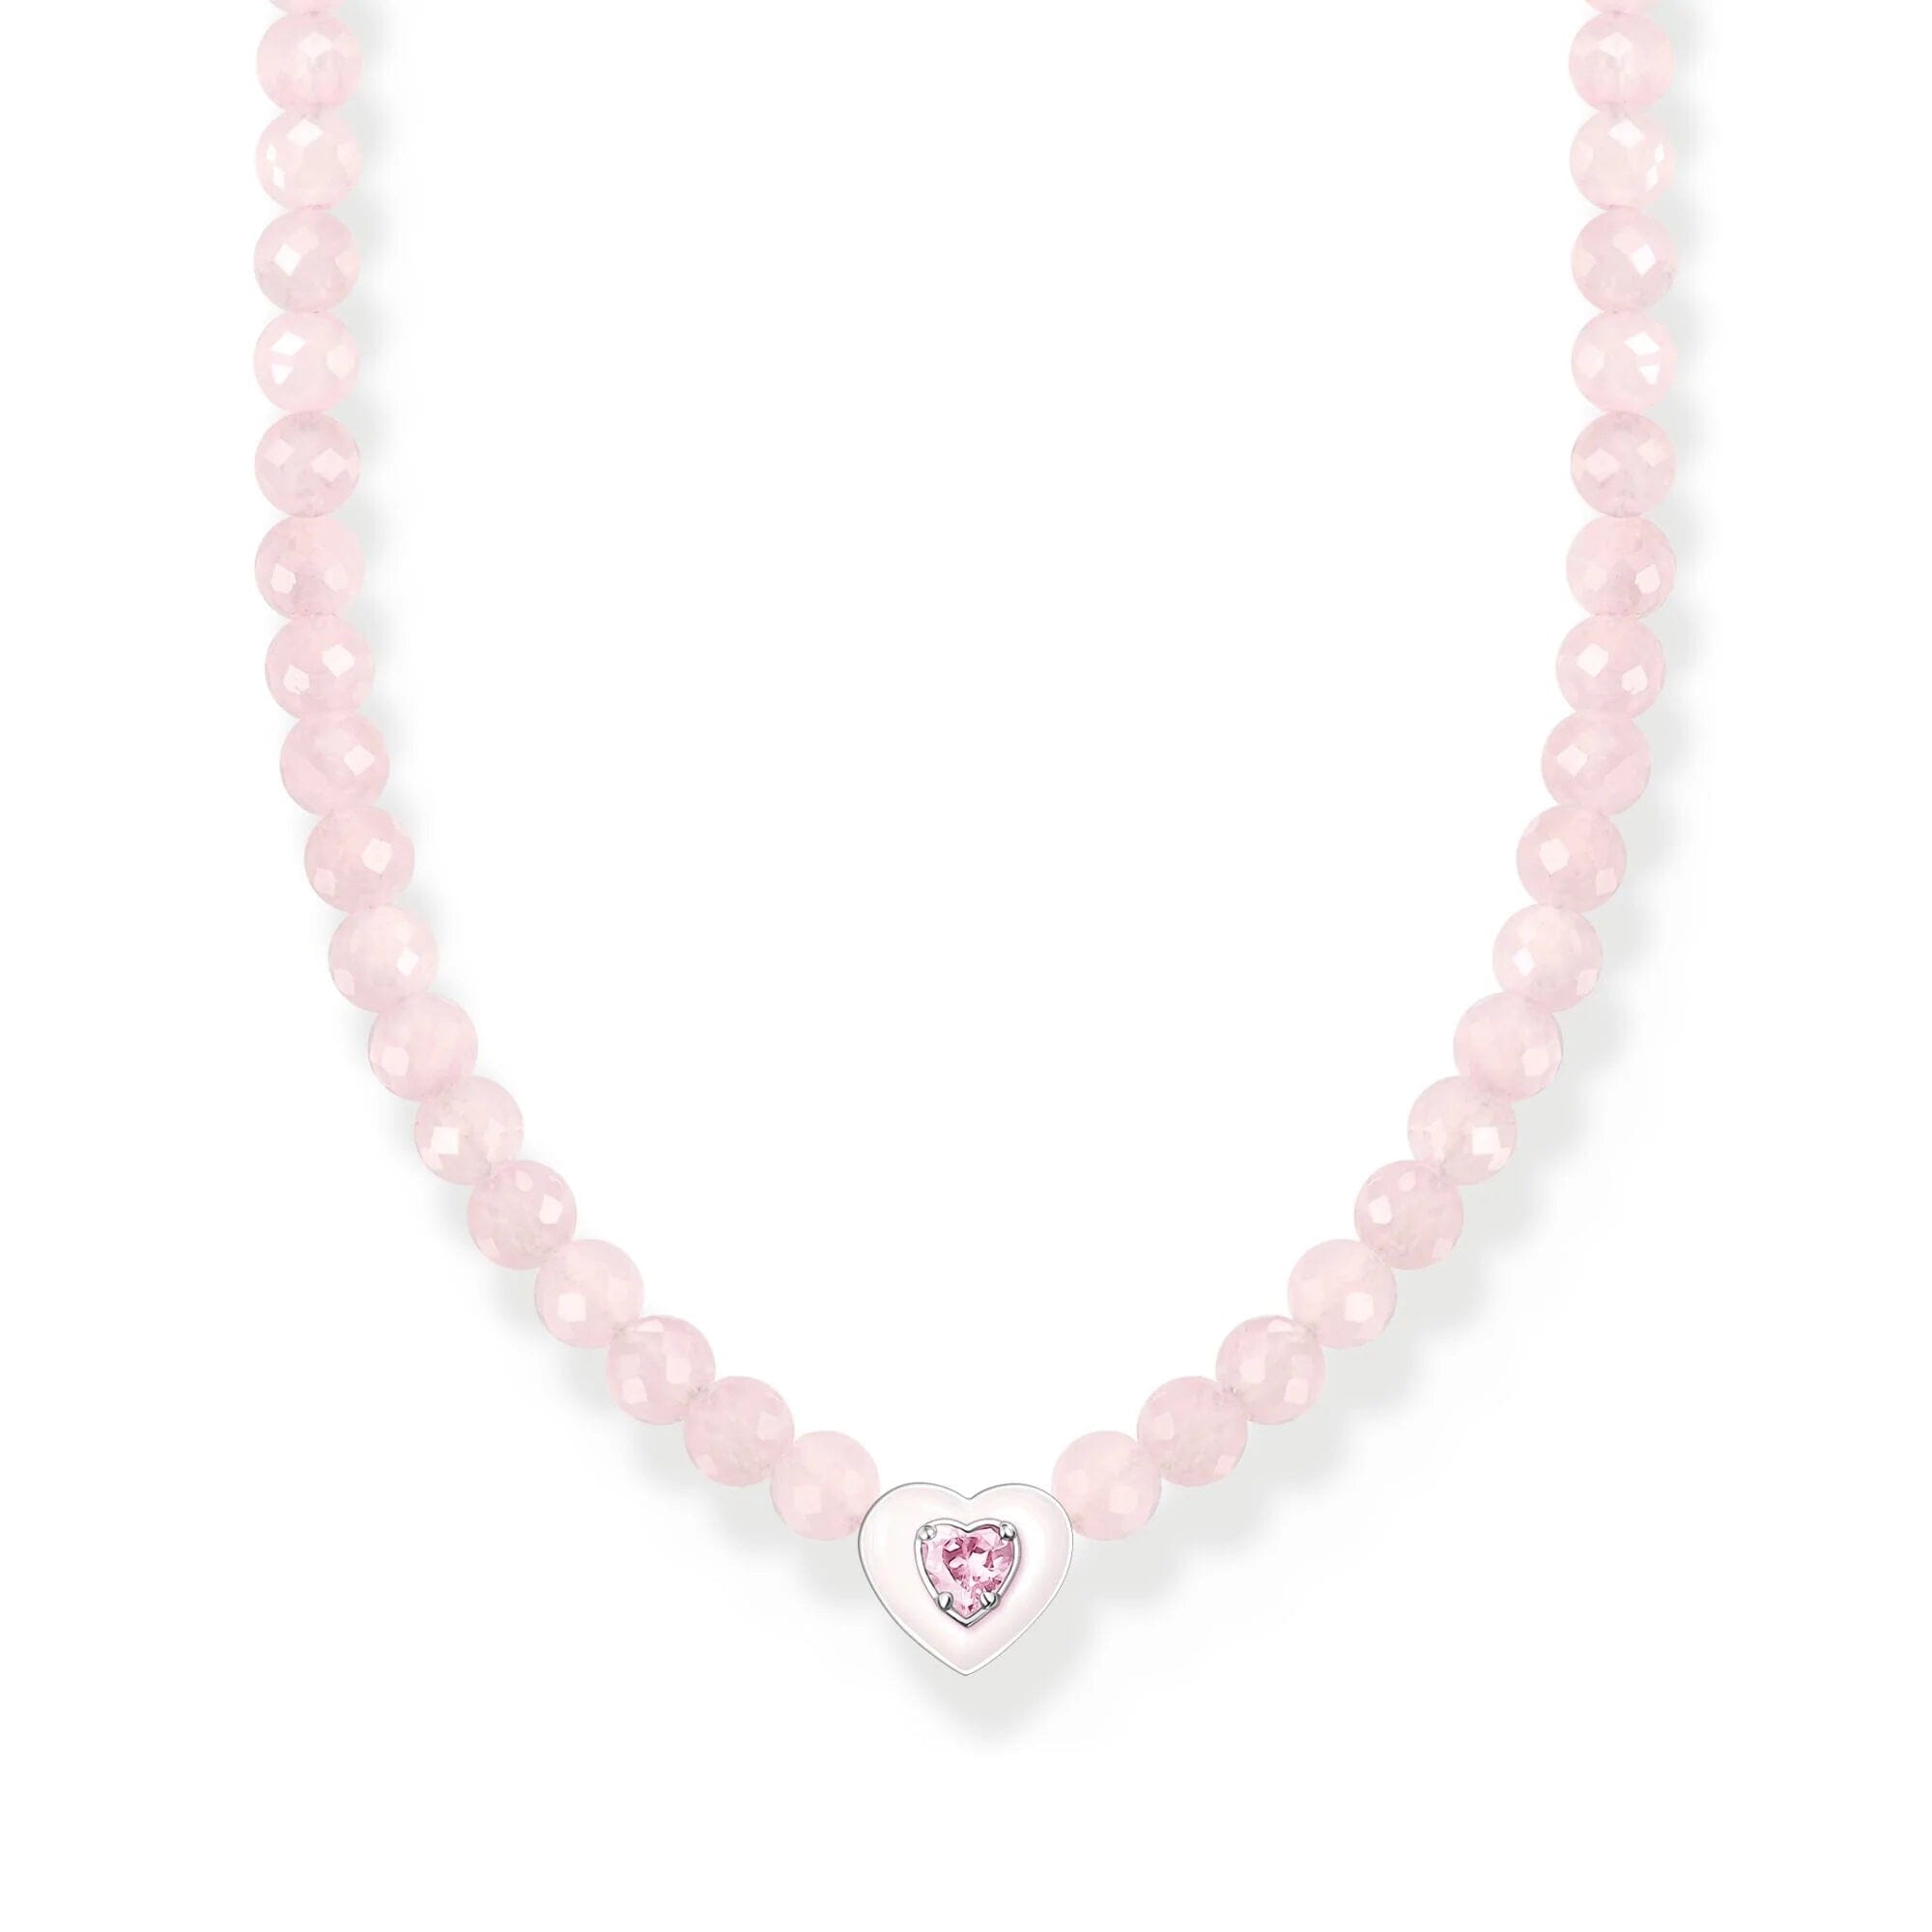 THOMAS SABO Choker Heart With Pink Pearls Necklaces Thomas Sabo 